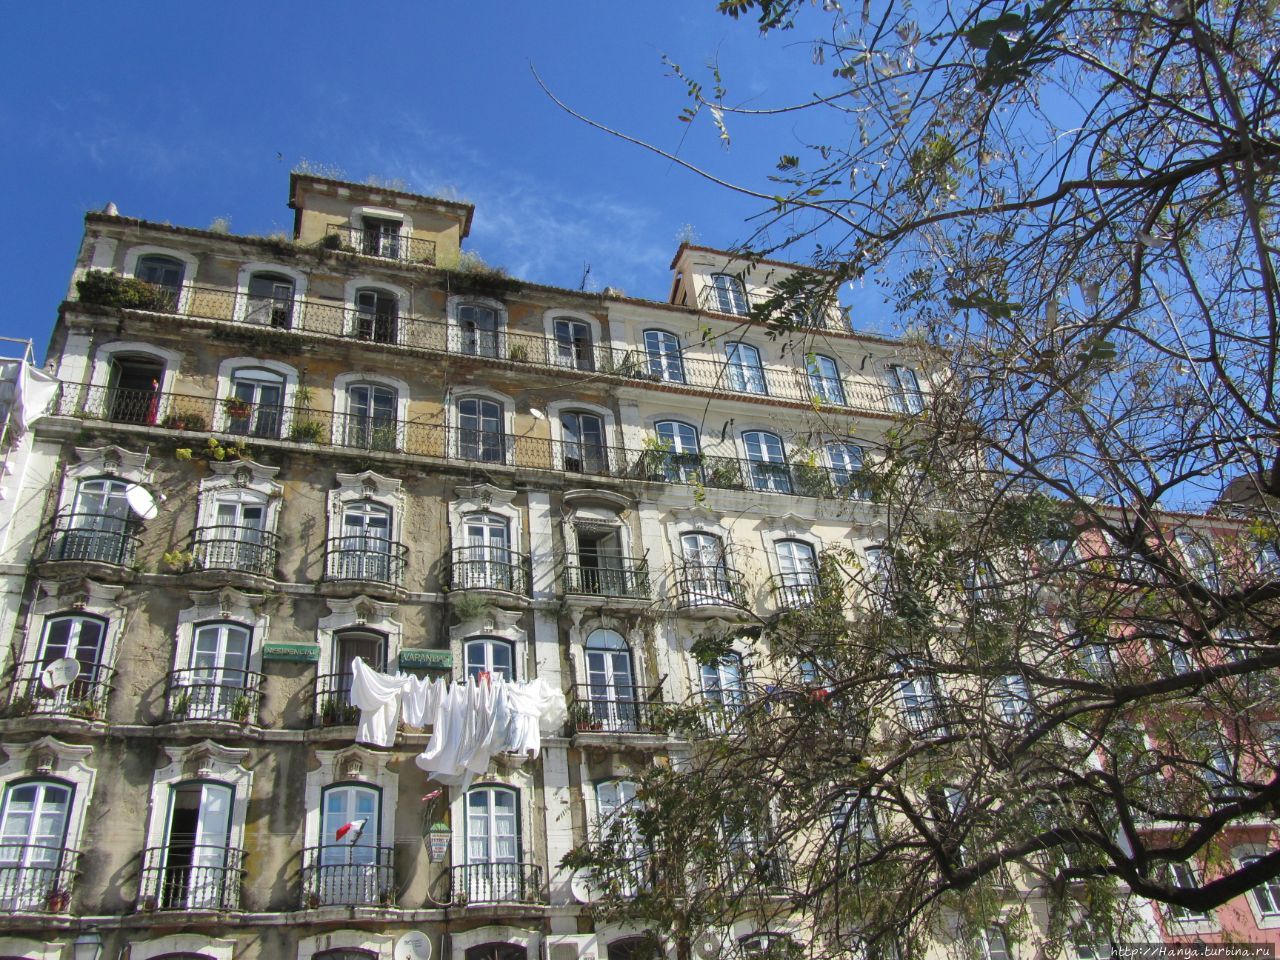 Дом с балконами (Каза даш Варандаш) / Casa das Varandas